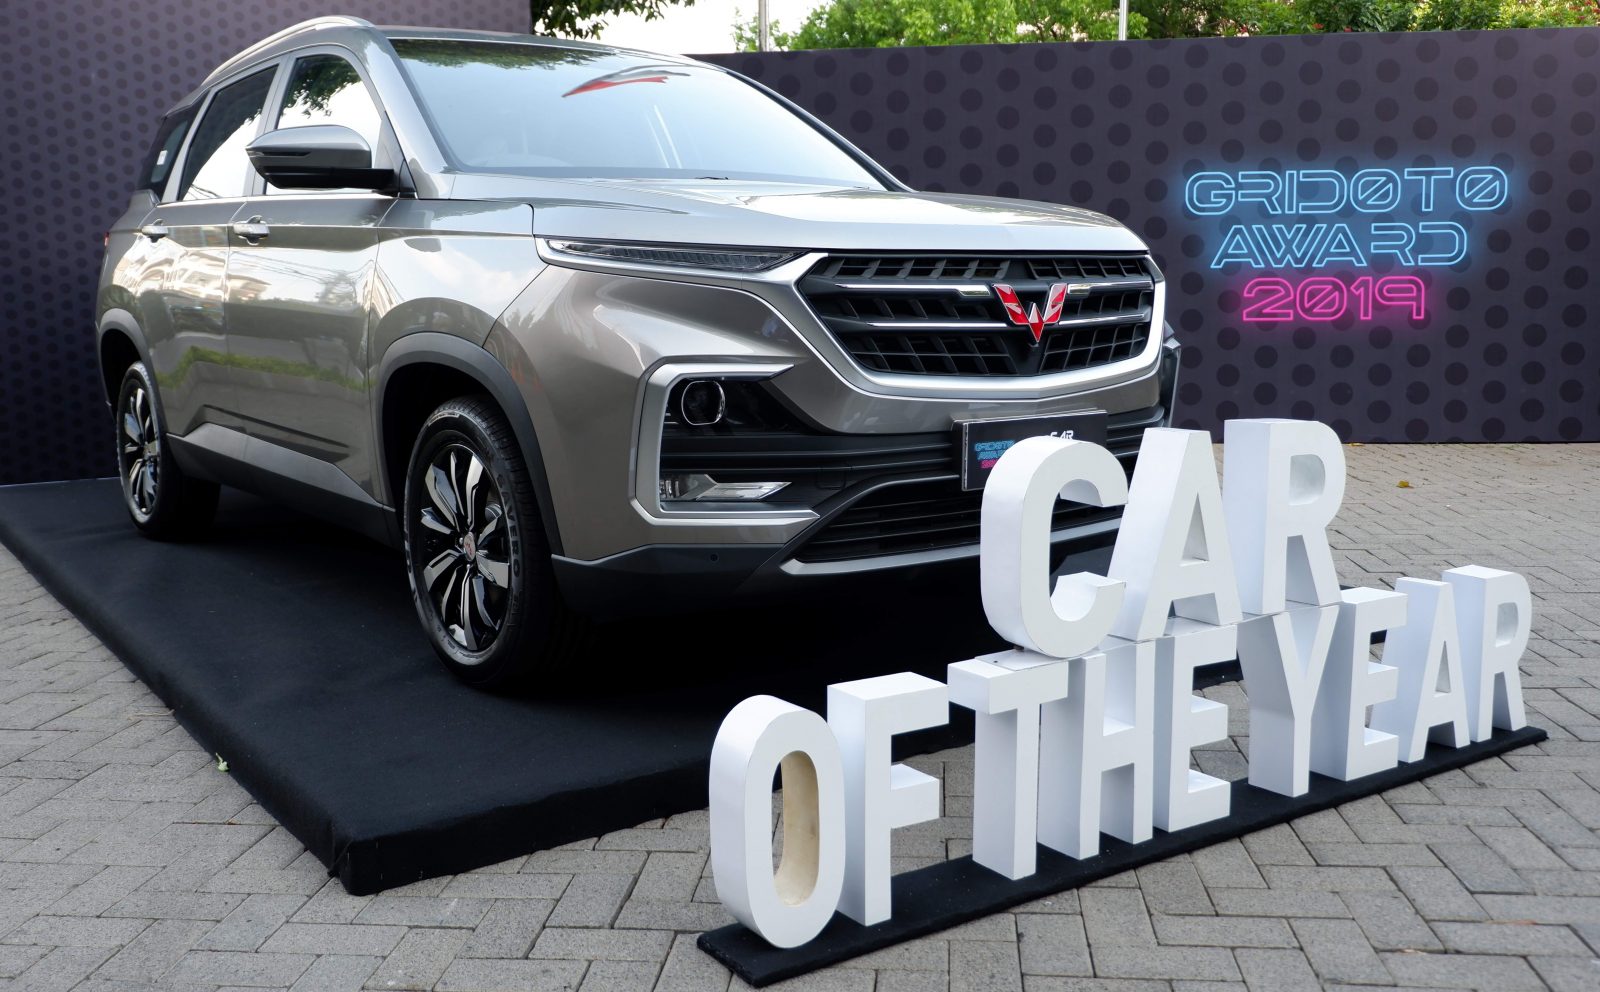 Image Wuling Almaz Won Car of the Year at the 2019 Gridoto Award